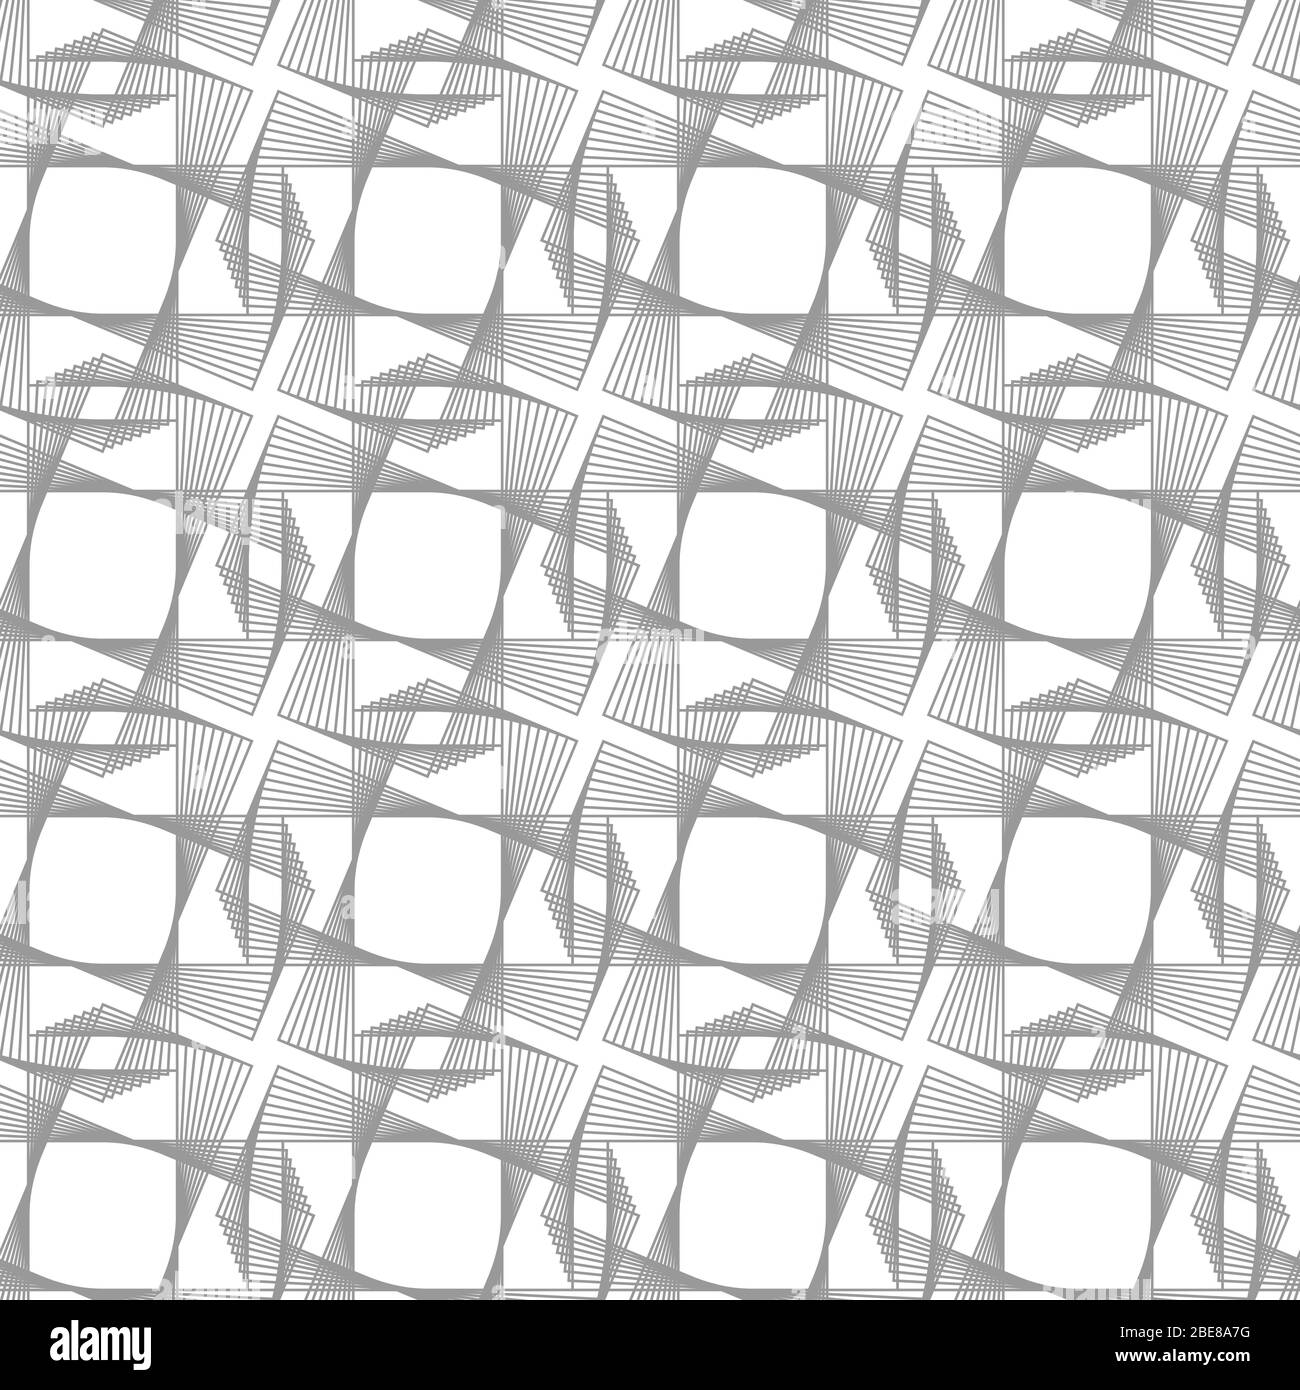 Guilloche Grid Vektor nahtlose Muster. Grauer monochromer Hintergrund mit dünnen Linien Stock Vektor